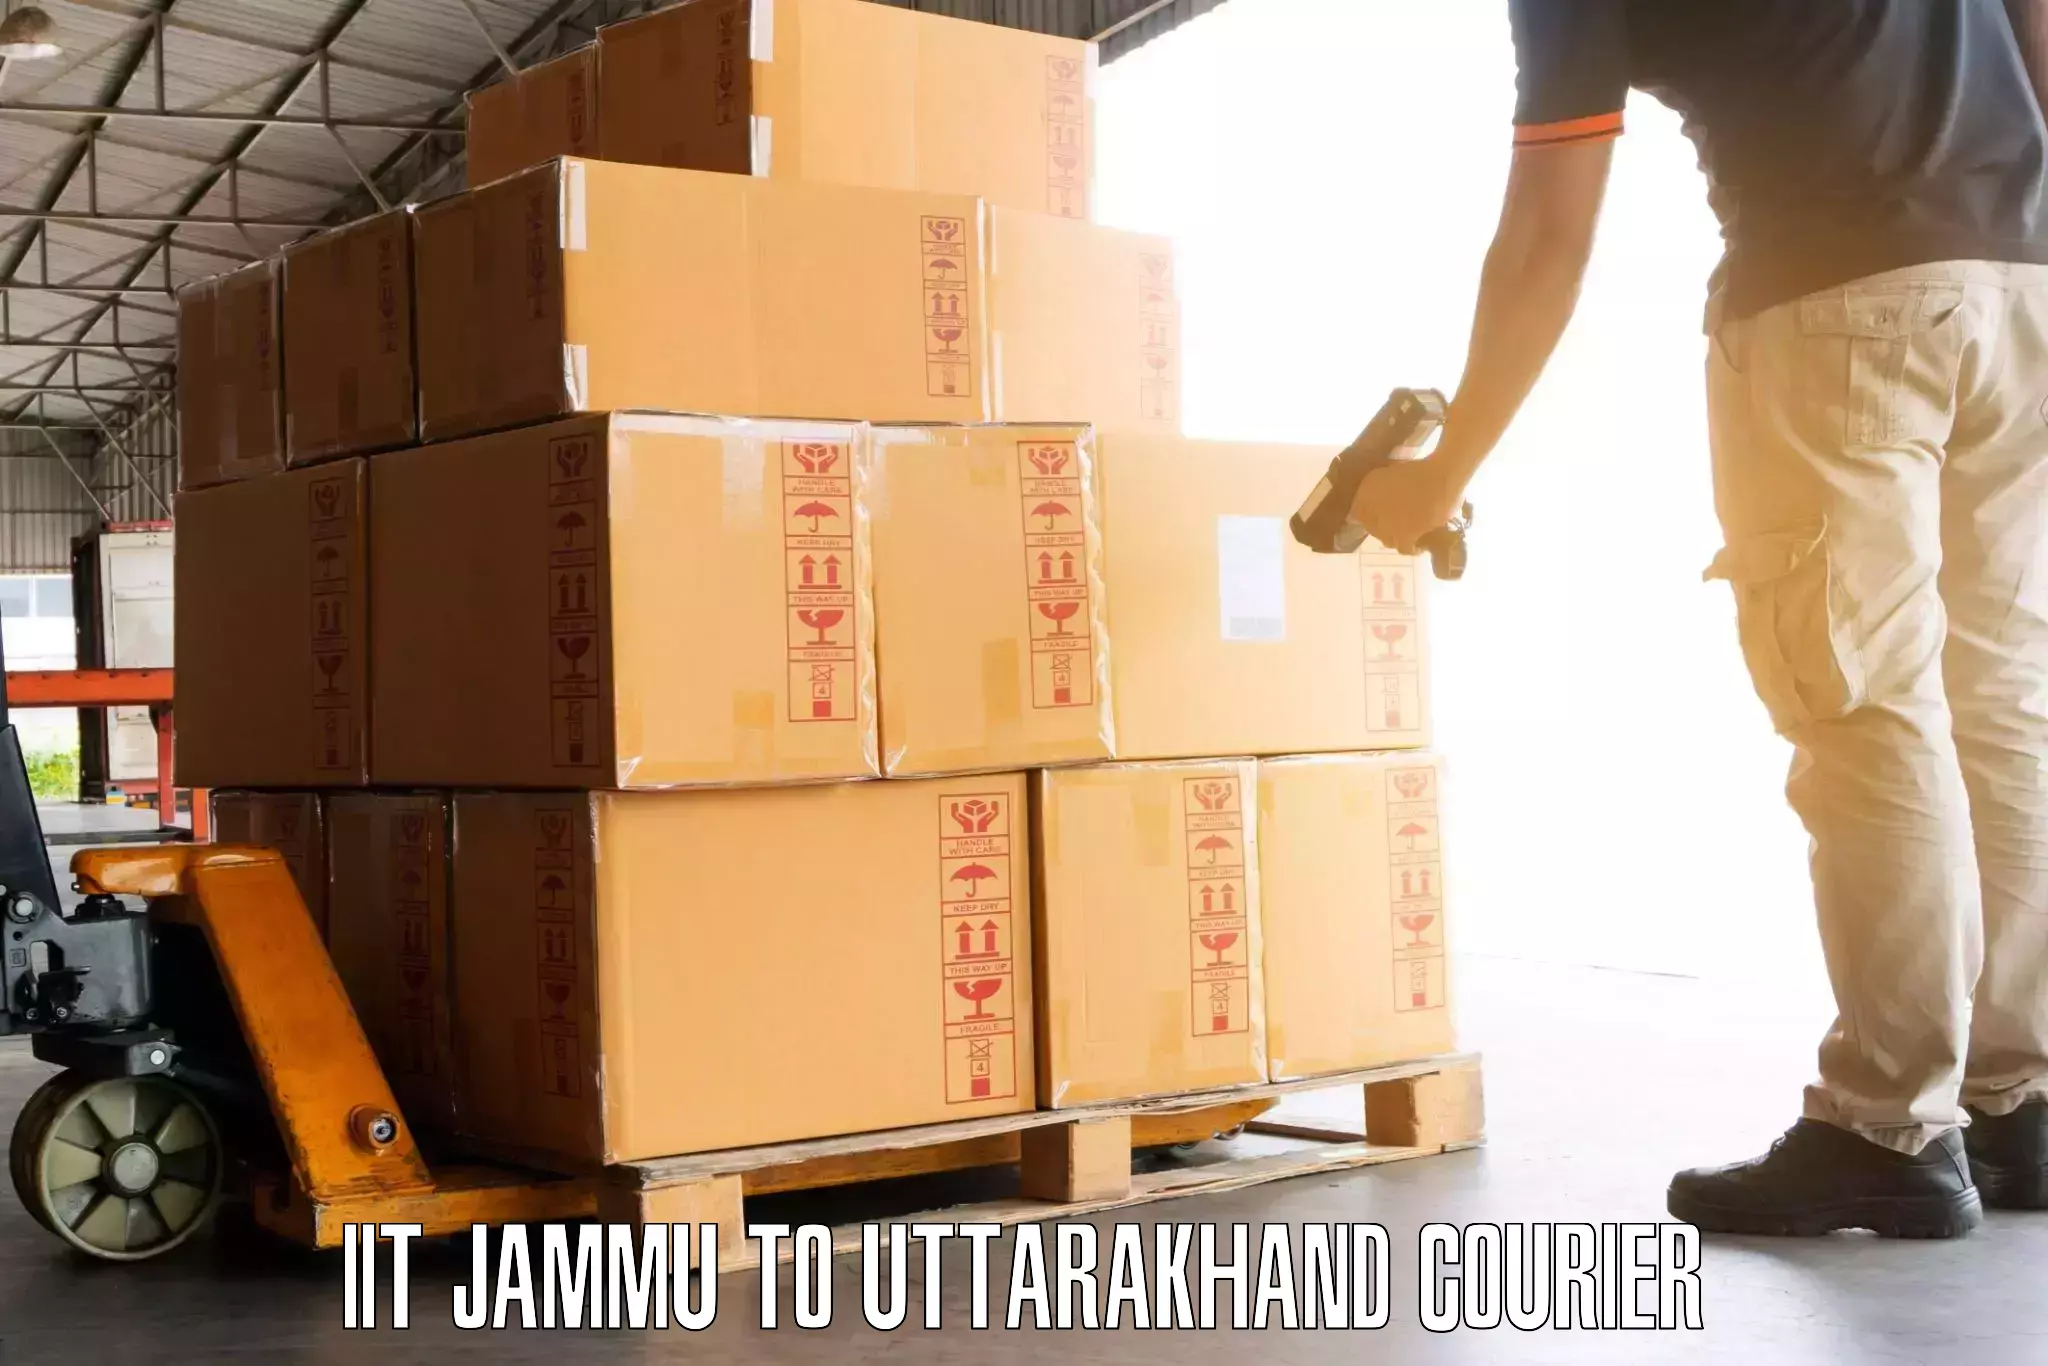 Express luggage delivery IIT Jammu to Joshimath